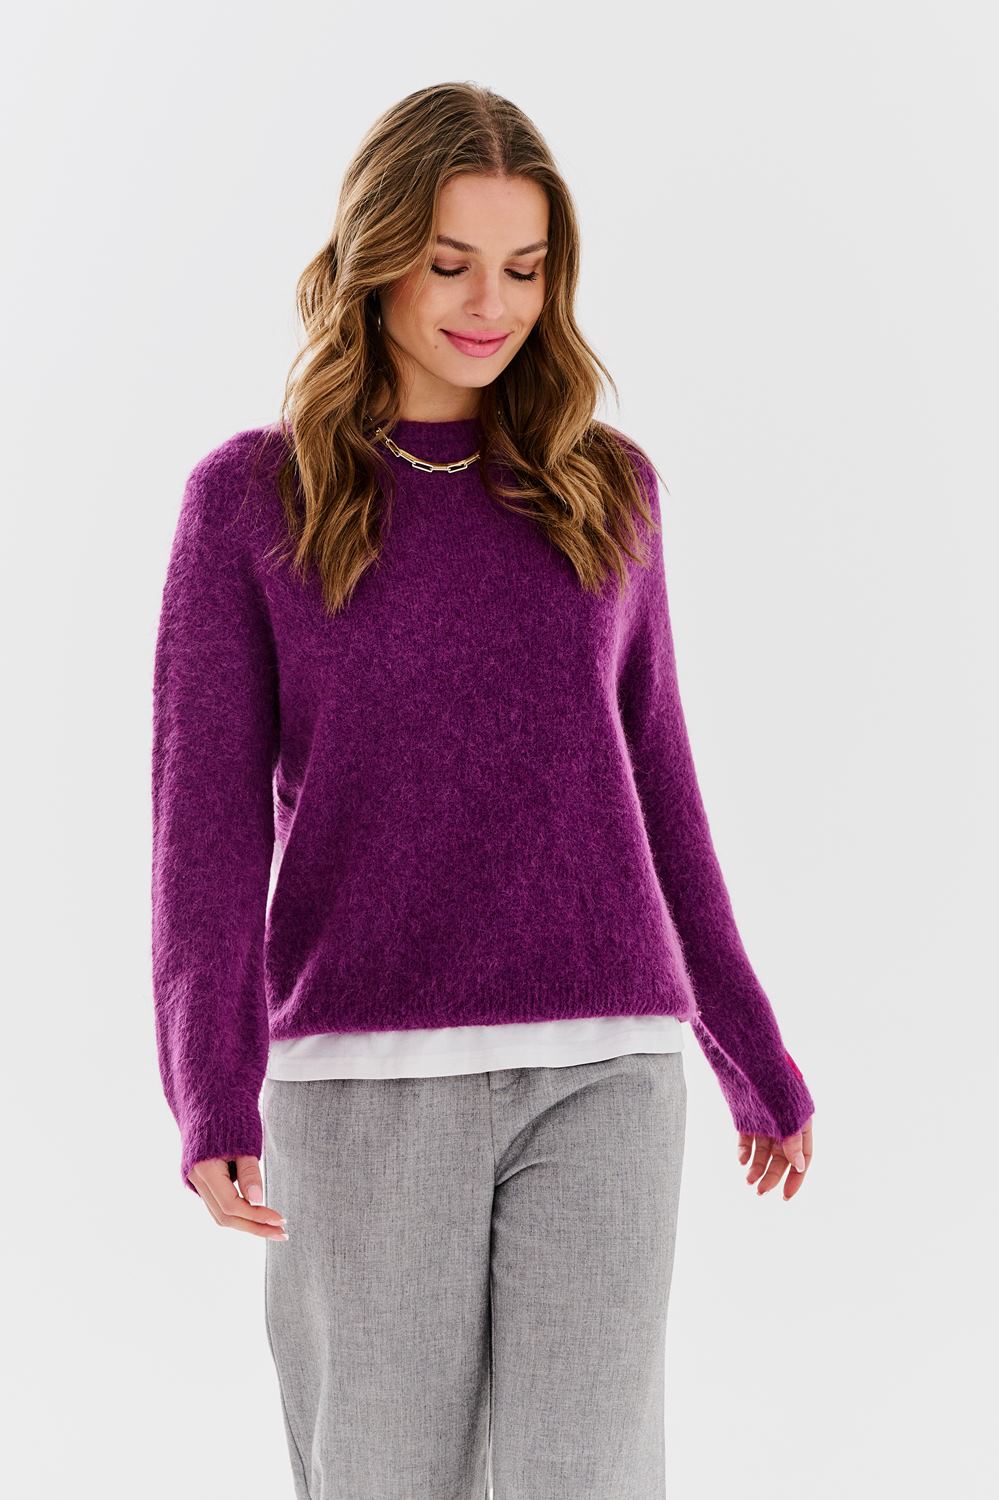 Horizon sweater